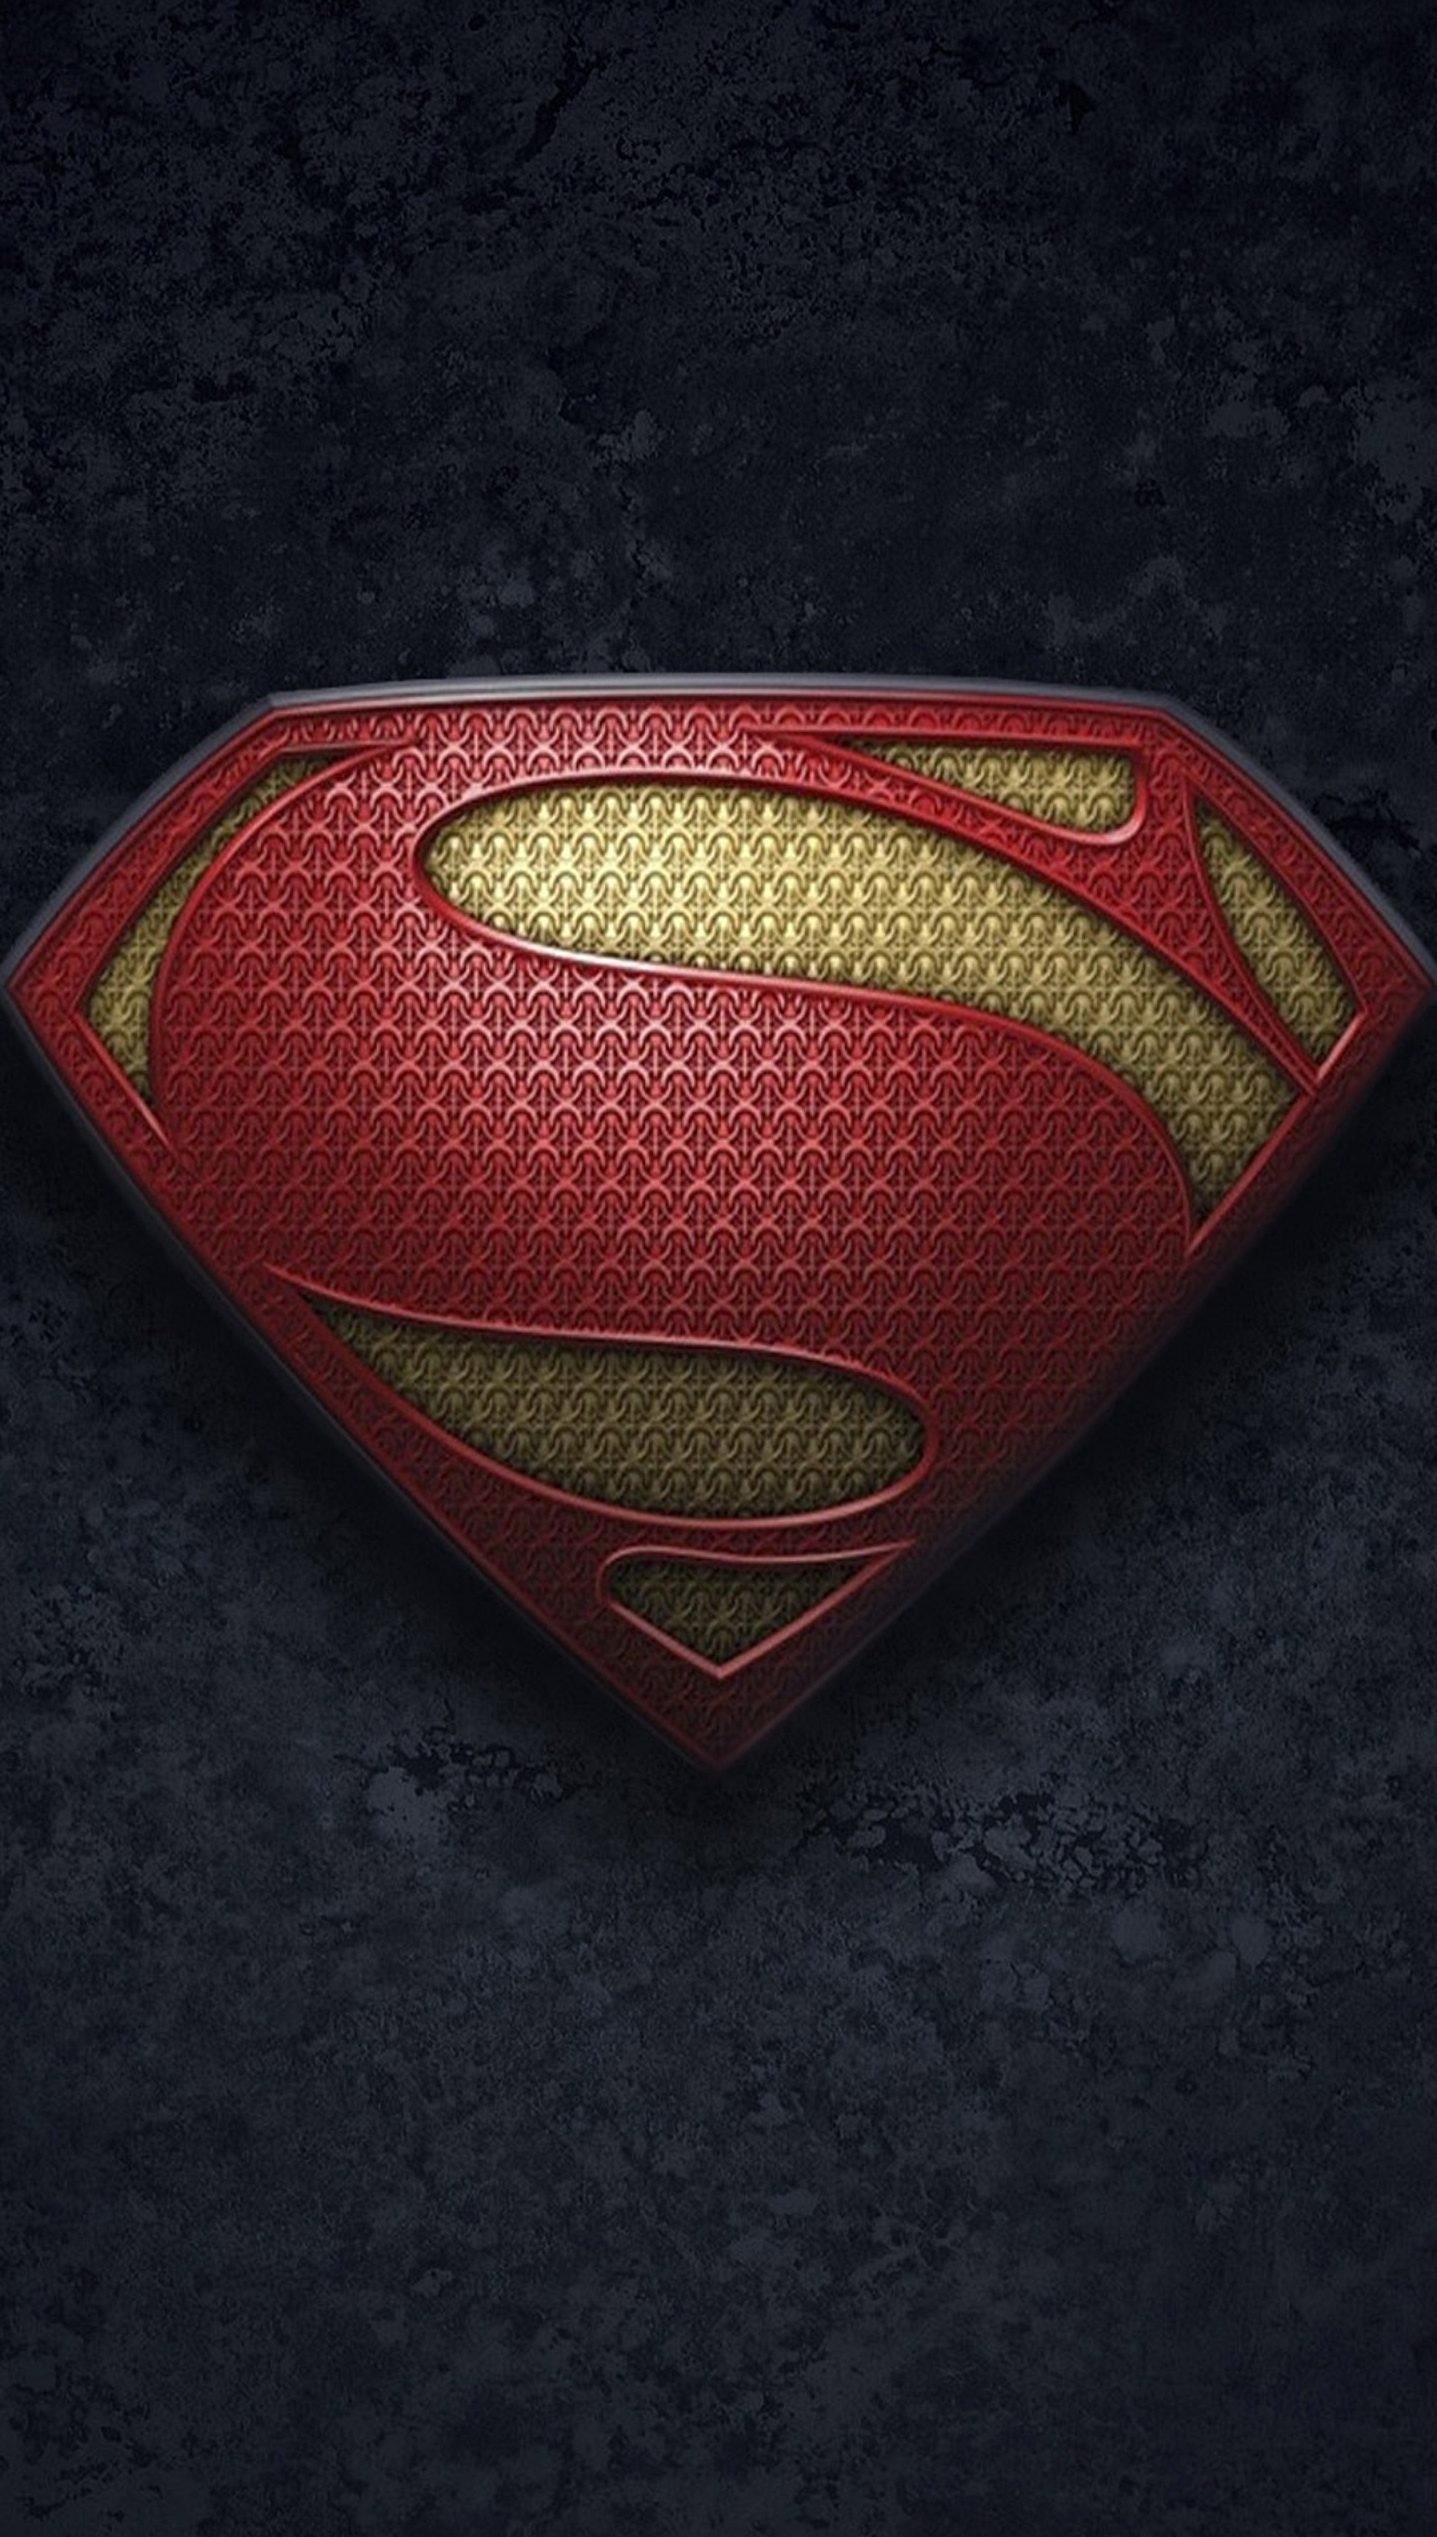 fond d'écran de verrouillage cool,superman,rouge,ligue de justice,personnage fictif,super héros